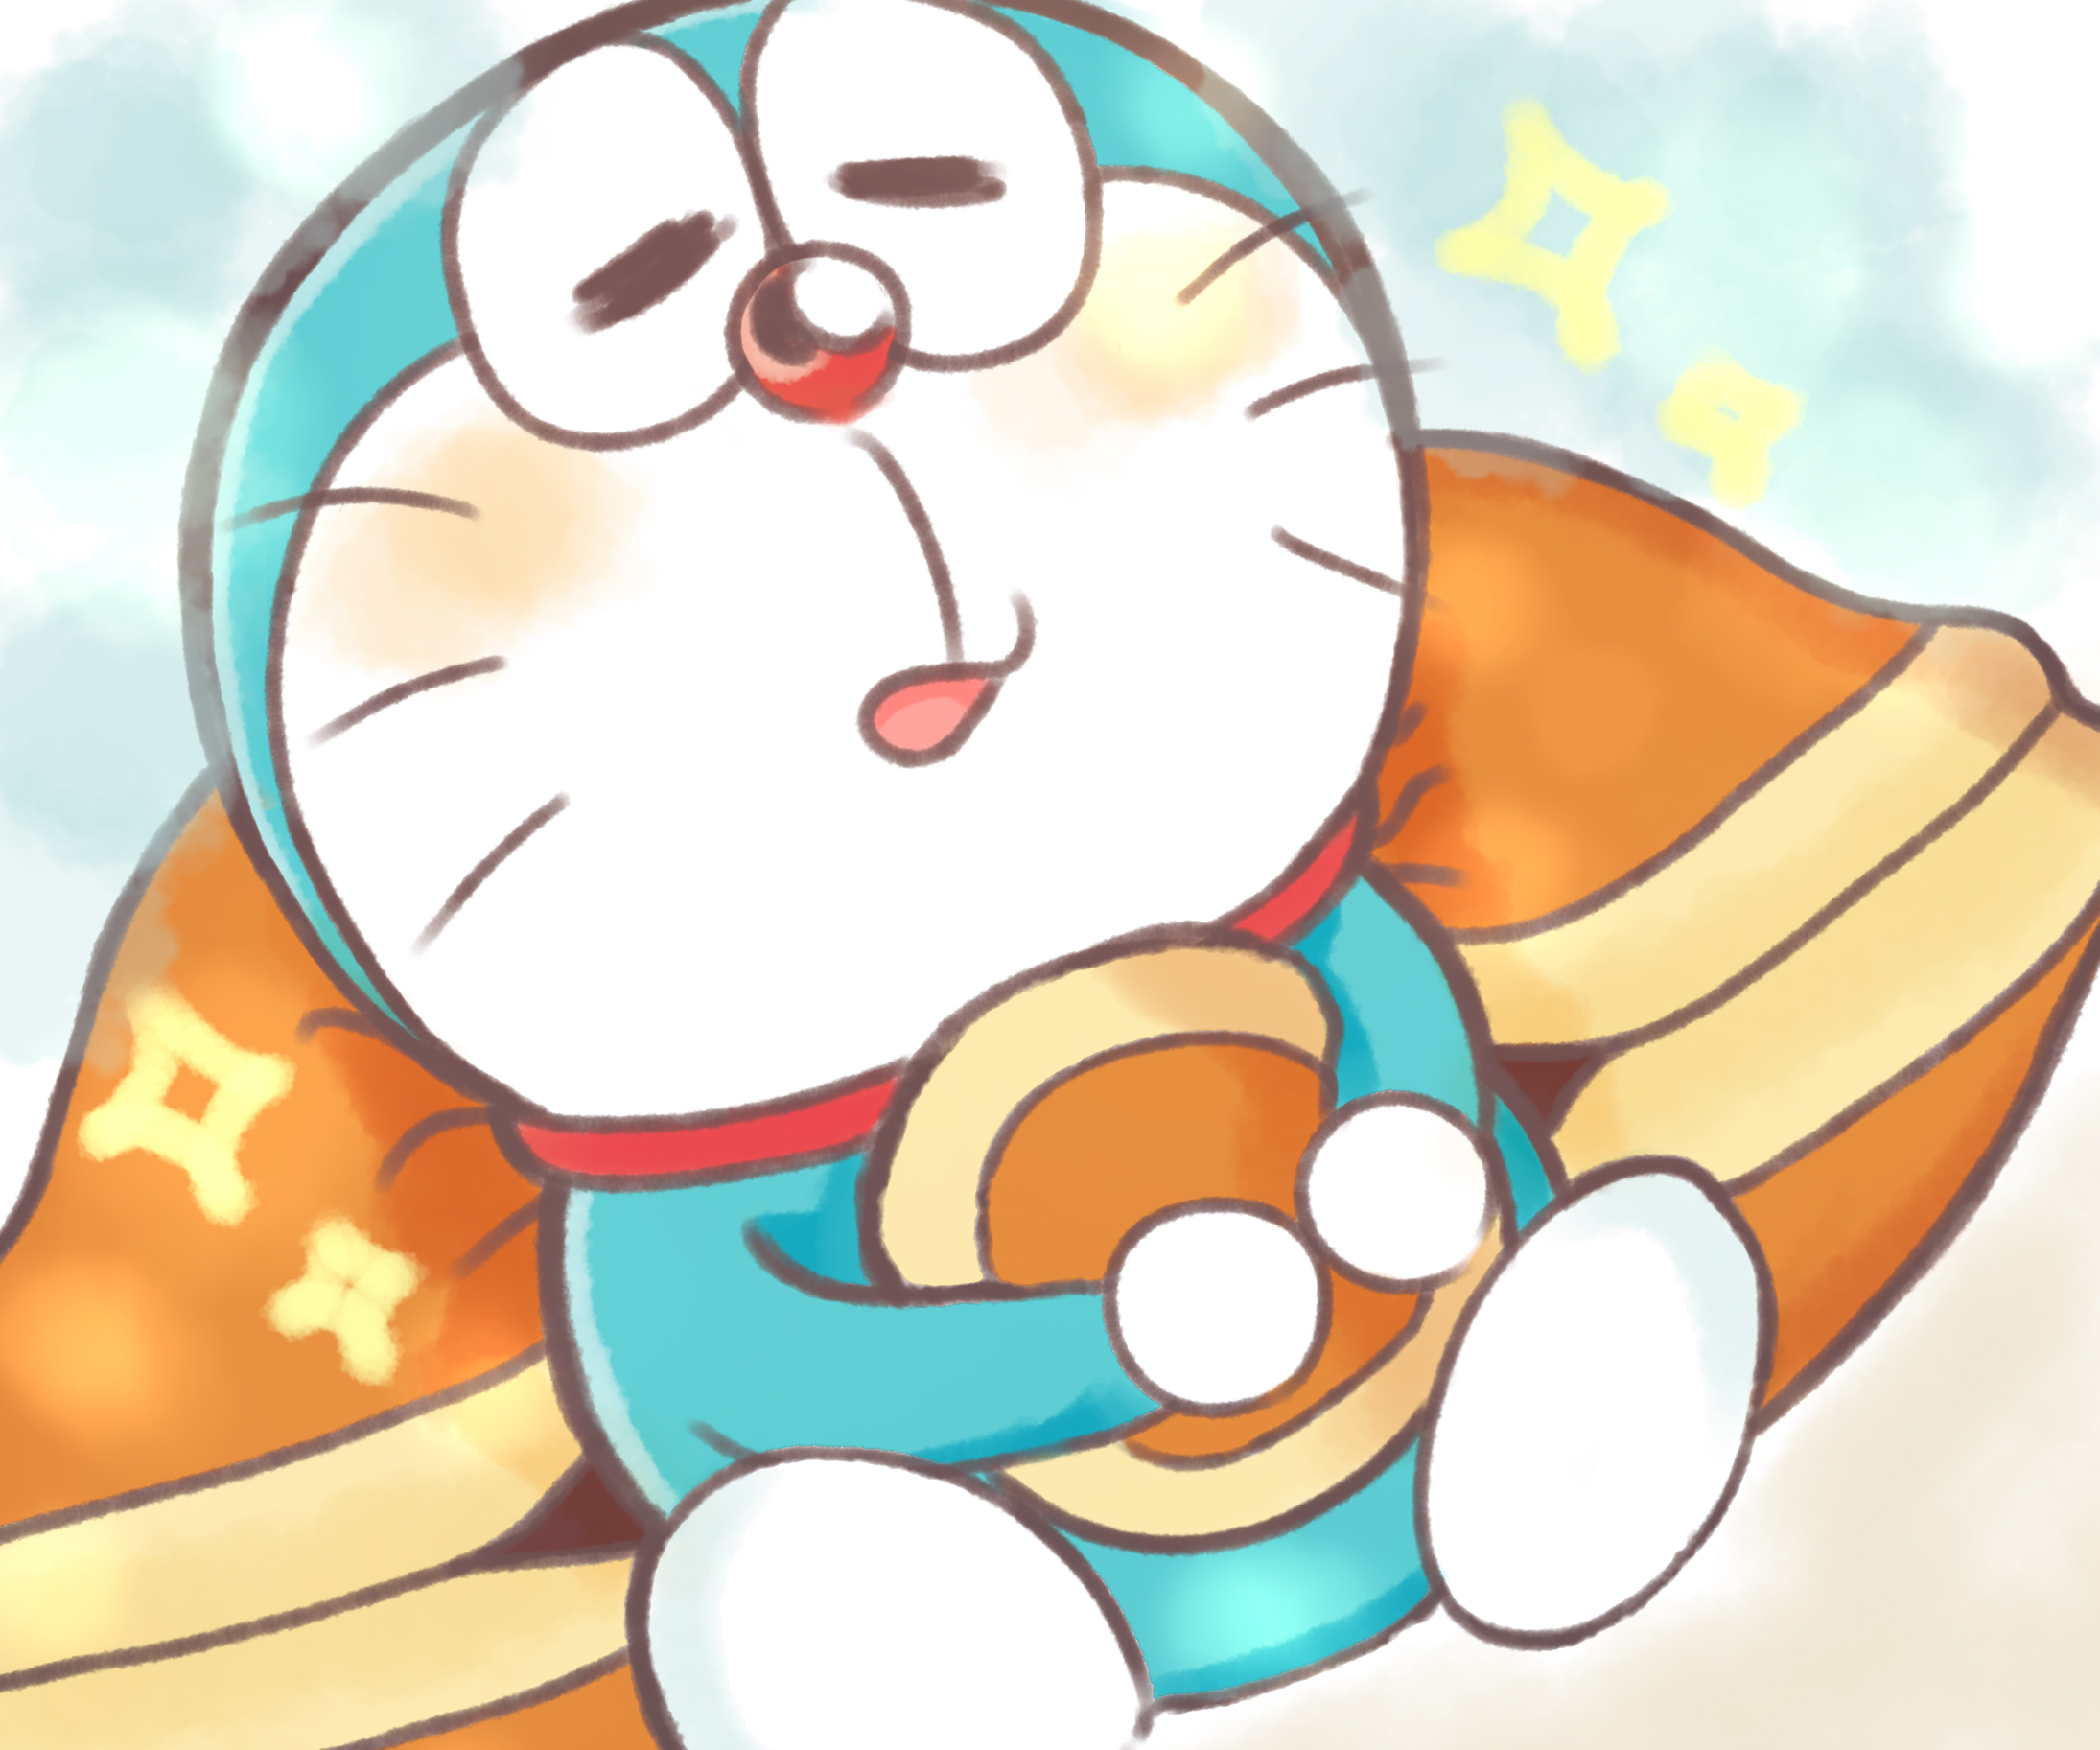 Hình vẽ Doraemon: Hãy cùng vẽ Doraemon, chú mèo máy dễ thương và đầy màu sắc! Vẽ theo cách riêng của bạn và sáng tạo những hình ảnh hoàn toàn mới lạ. Với các chức năng vẽ tuyệt vời và những bản vẽ mẫu đẹp, việc vẽ Doraemon không hề khó khăn. Hãy chiêm ngưỡng những tác phẩm tuyệt vời nhất của bạn!